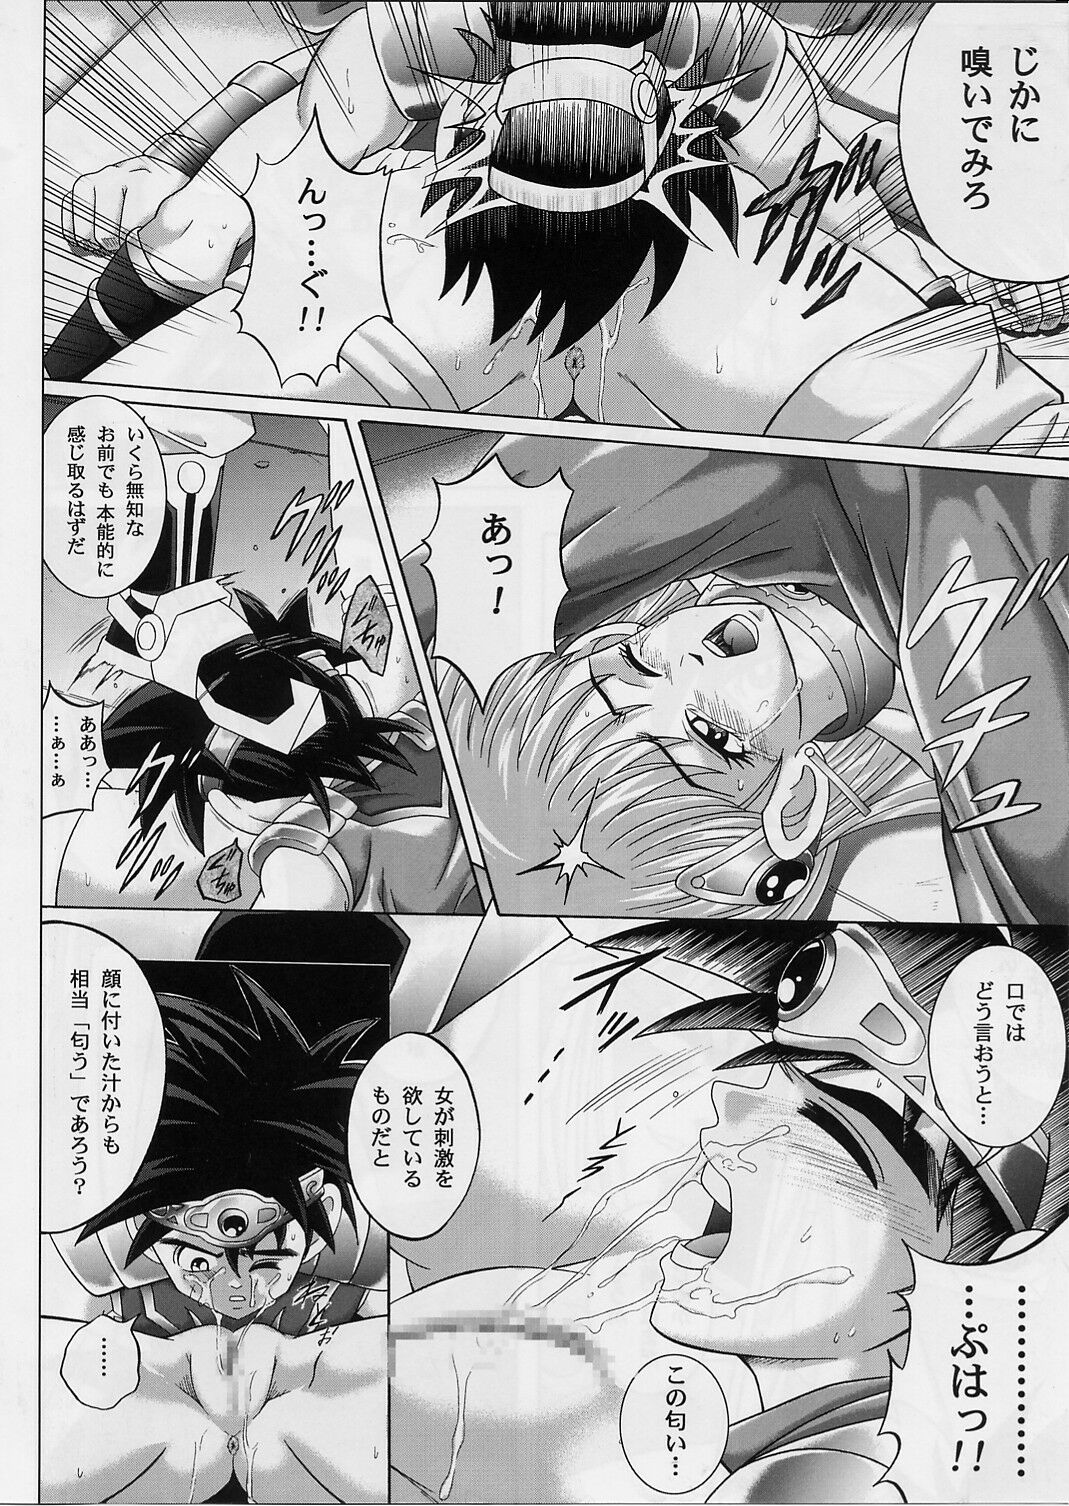 [Cyclone (Izumi, Reizei)] DIME ALLIANCE 2 (Dragon Quest Dai no Daibouken) page 21 full